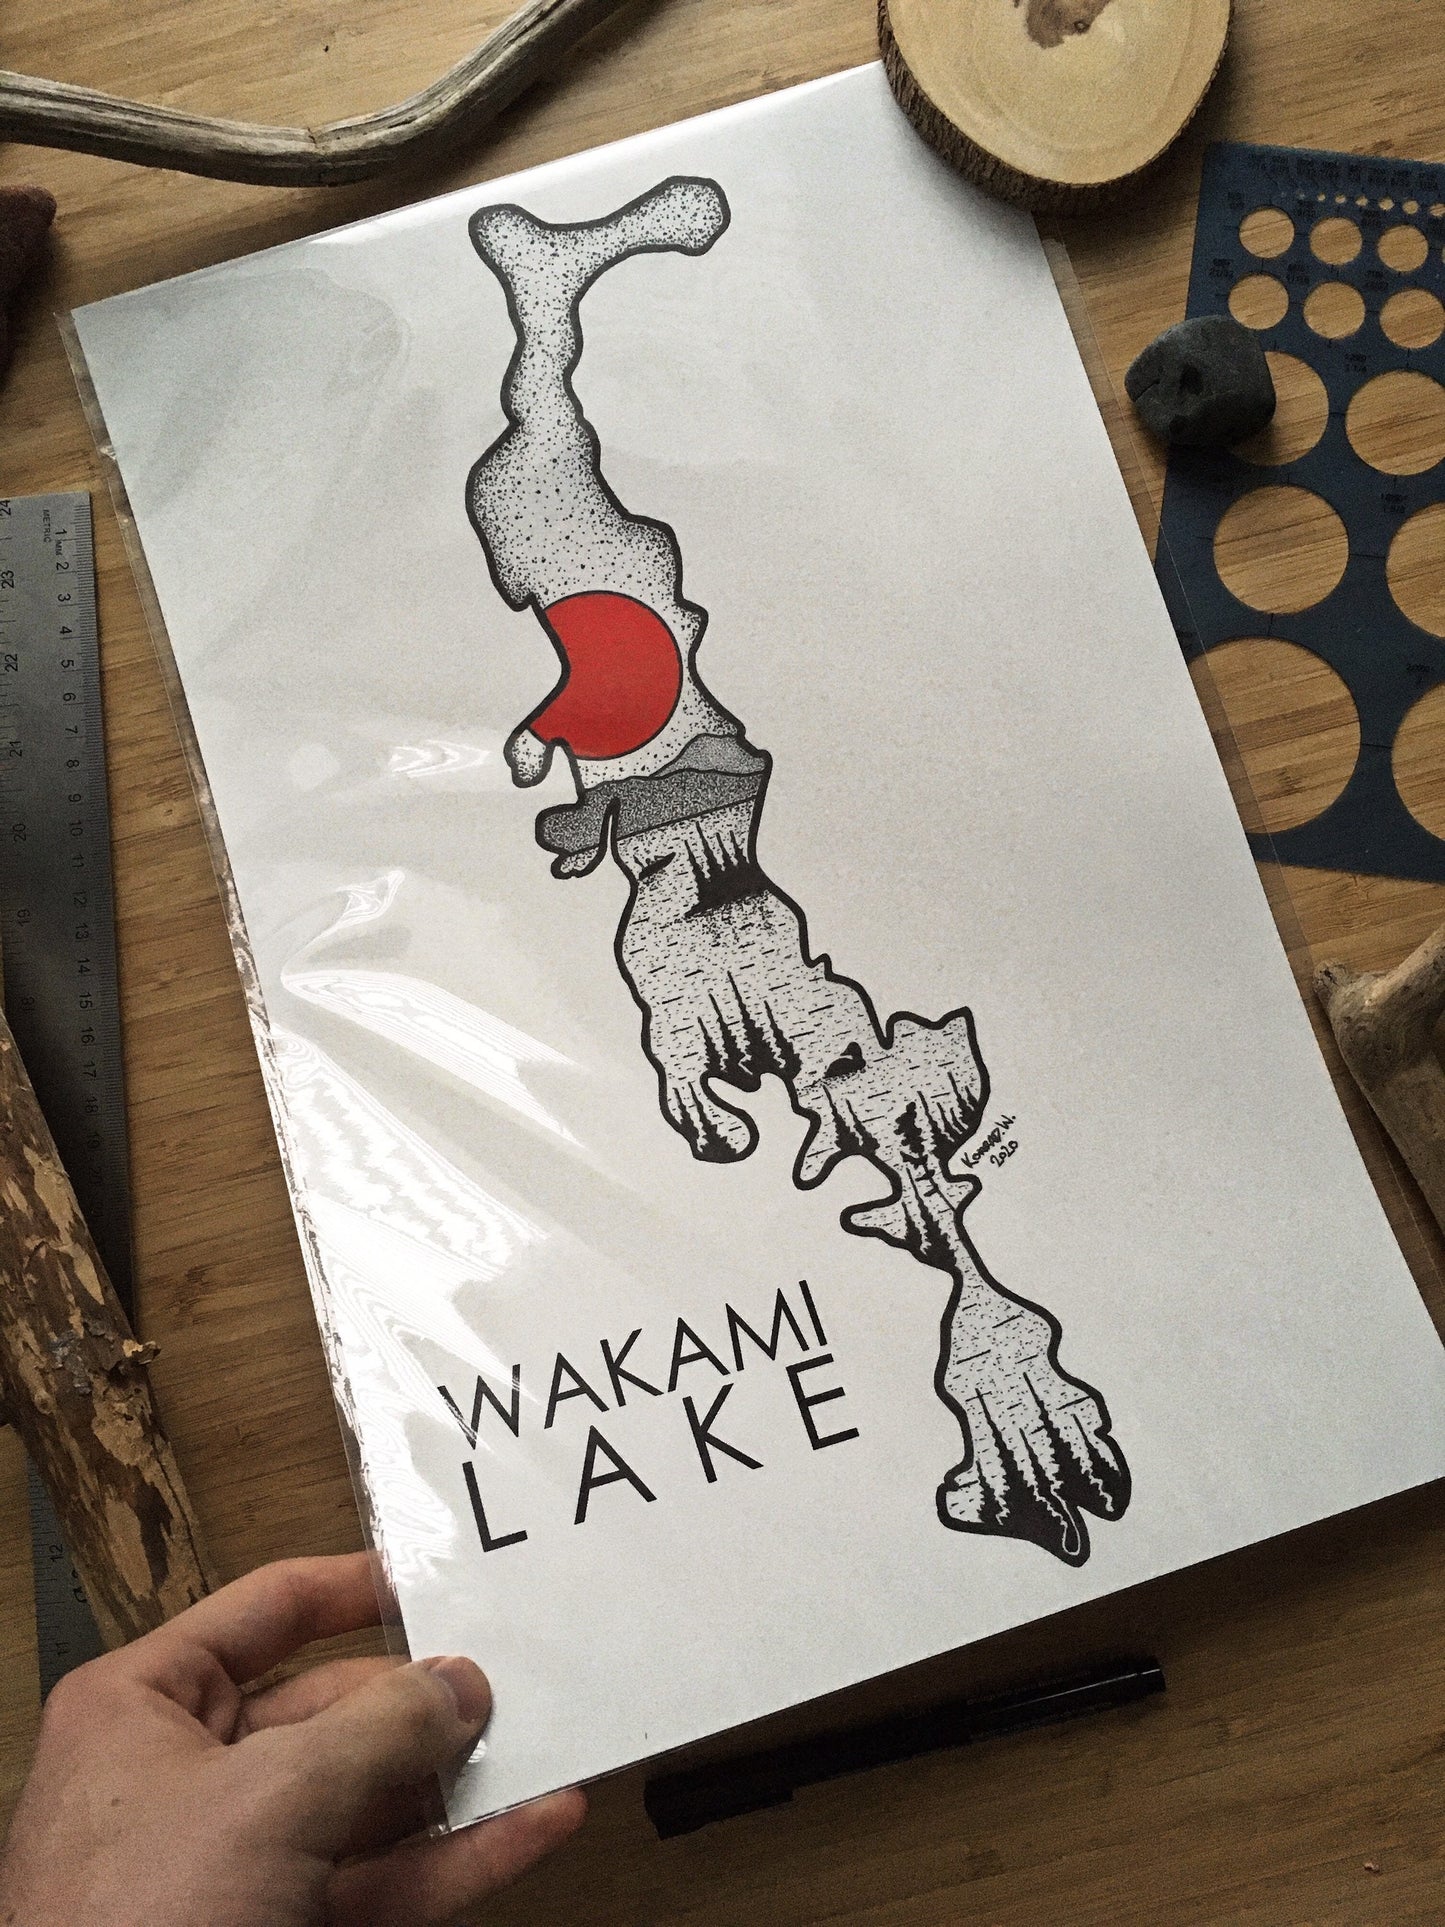 Wakami Lake - Pen & Ink PRINT